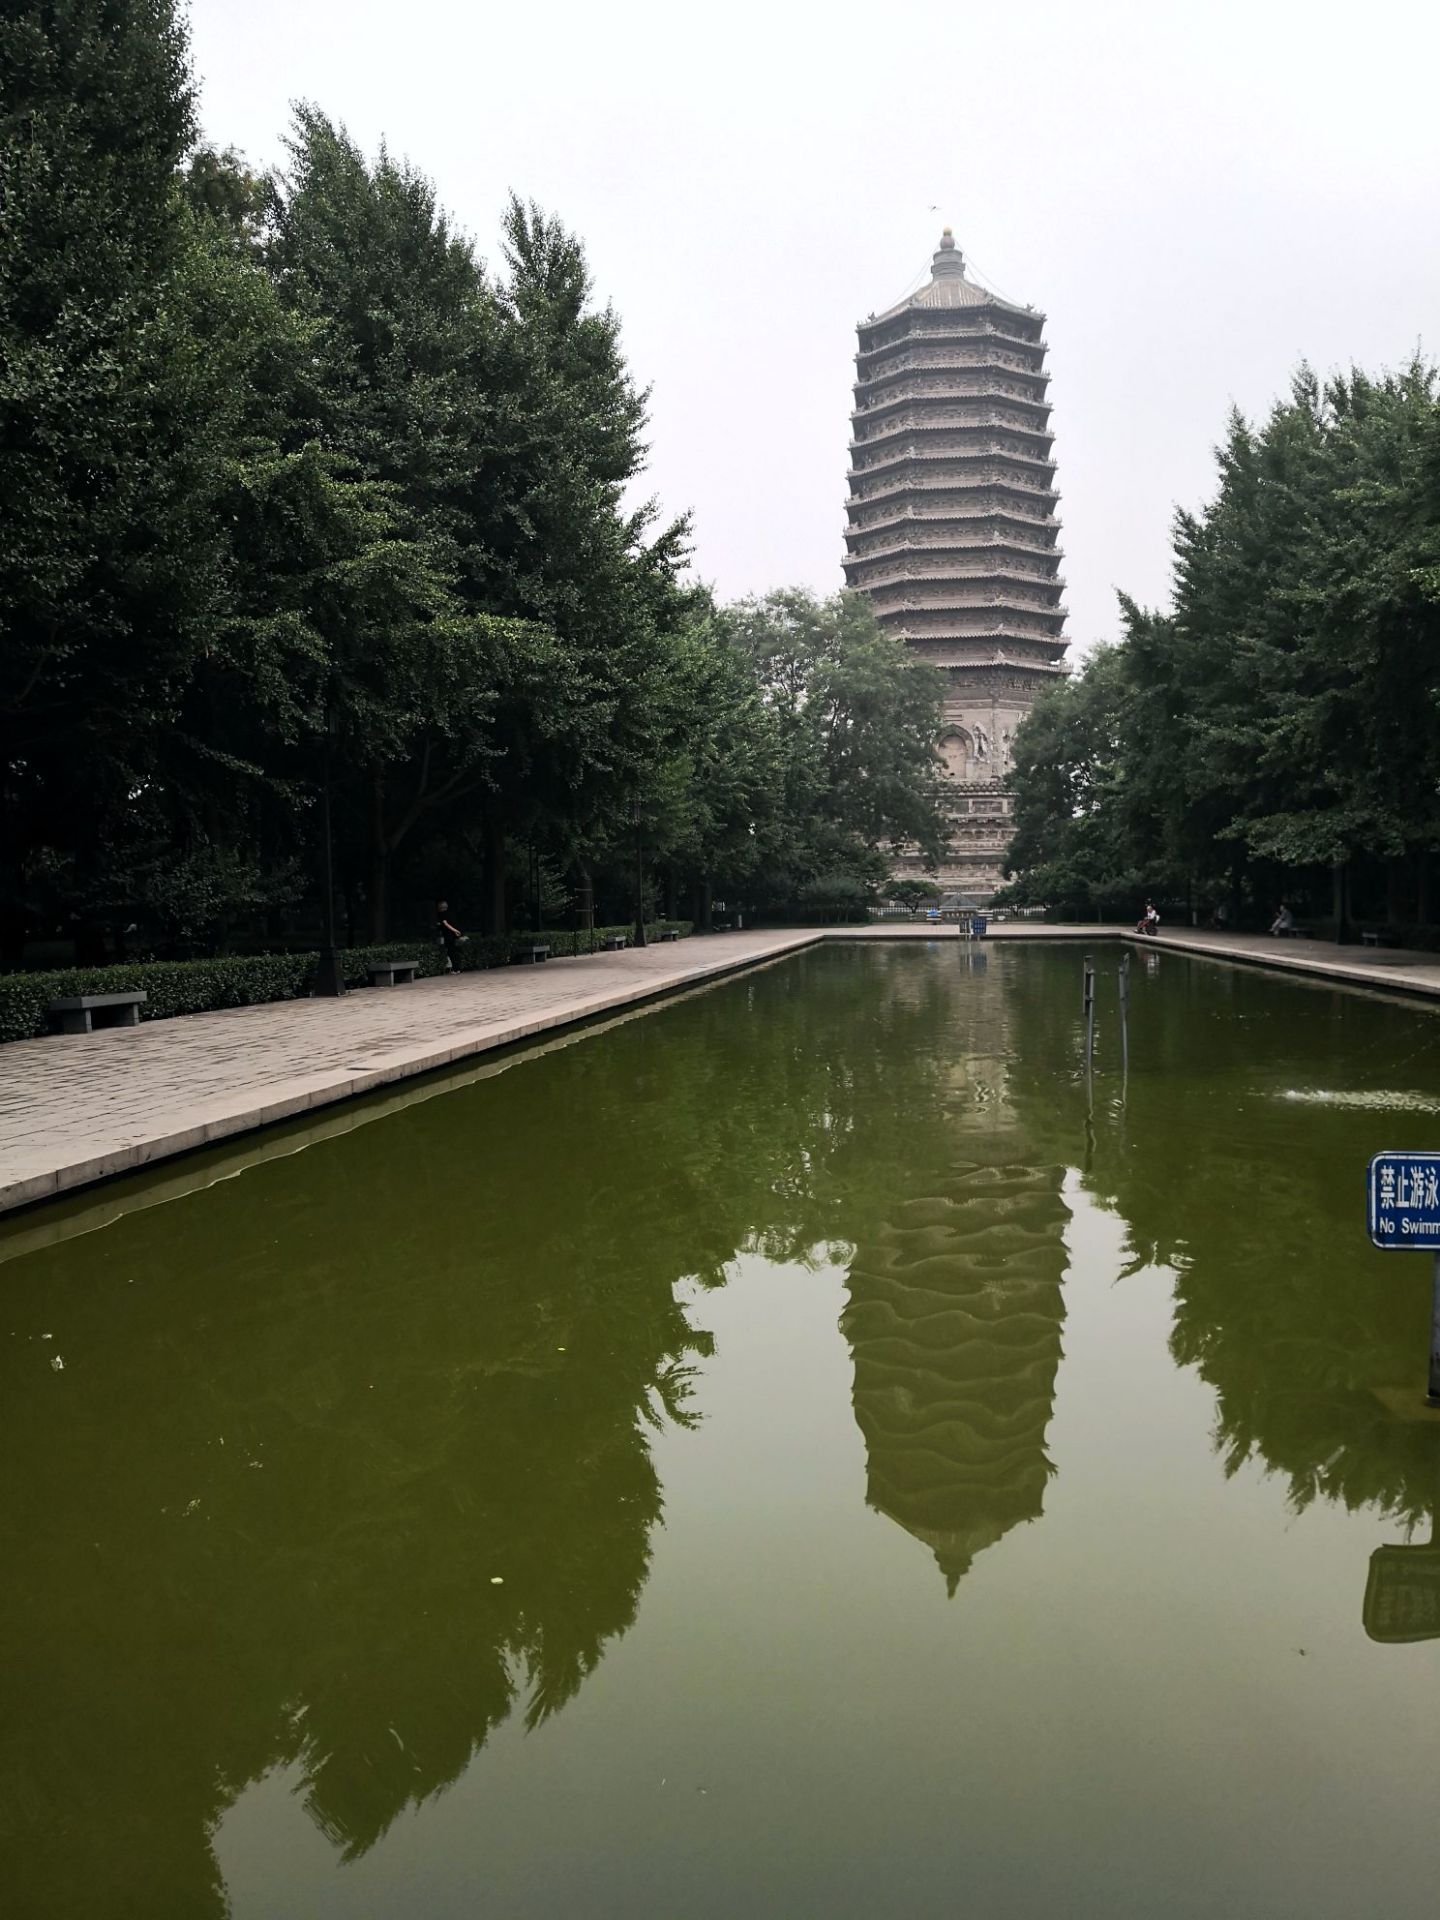 【携程攻略】北京玲珑塔(八里庄塔)景点,慈寿寺塔 慈寿寺塔是北京城里